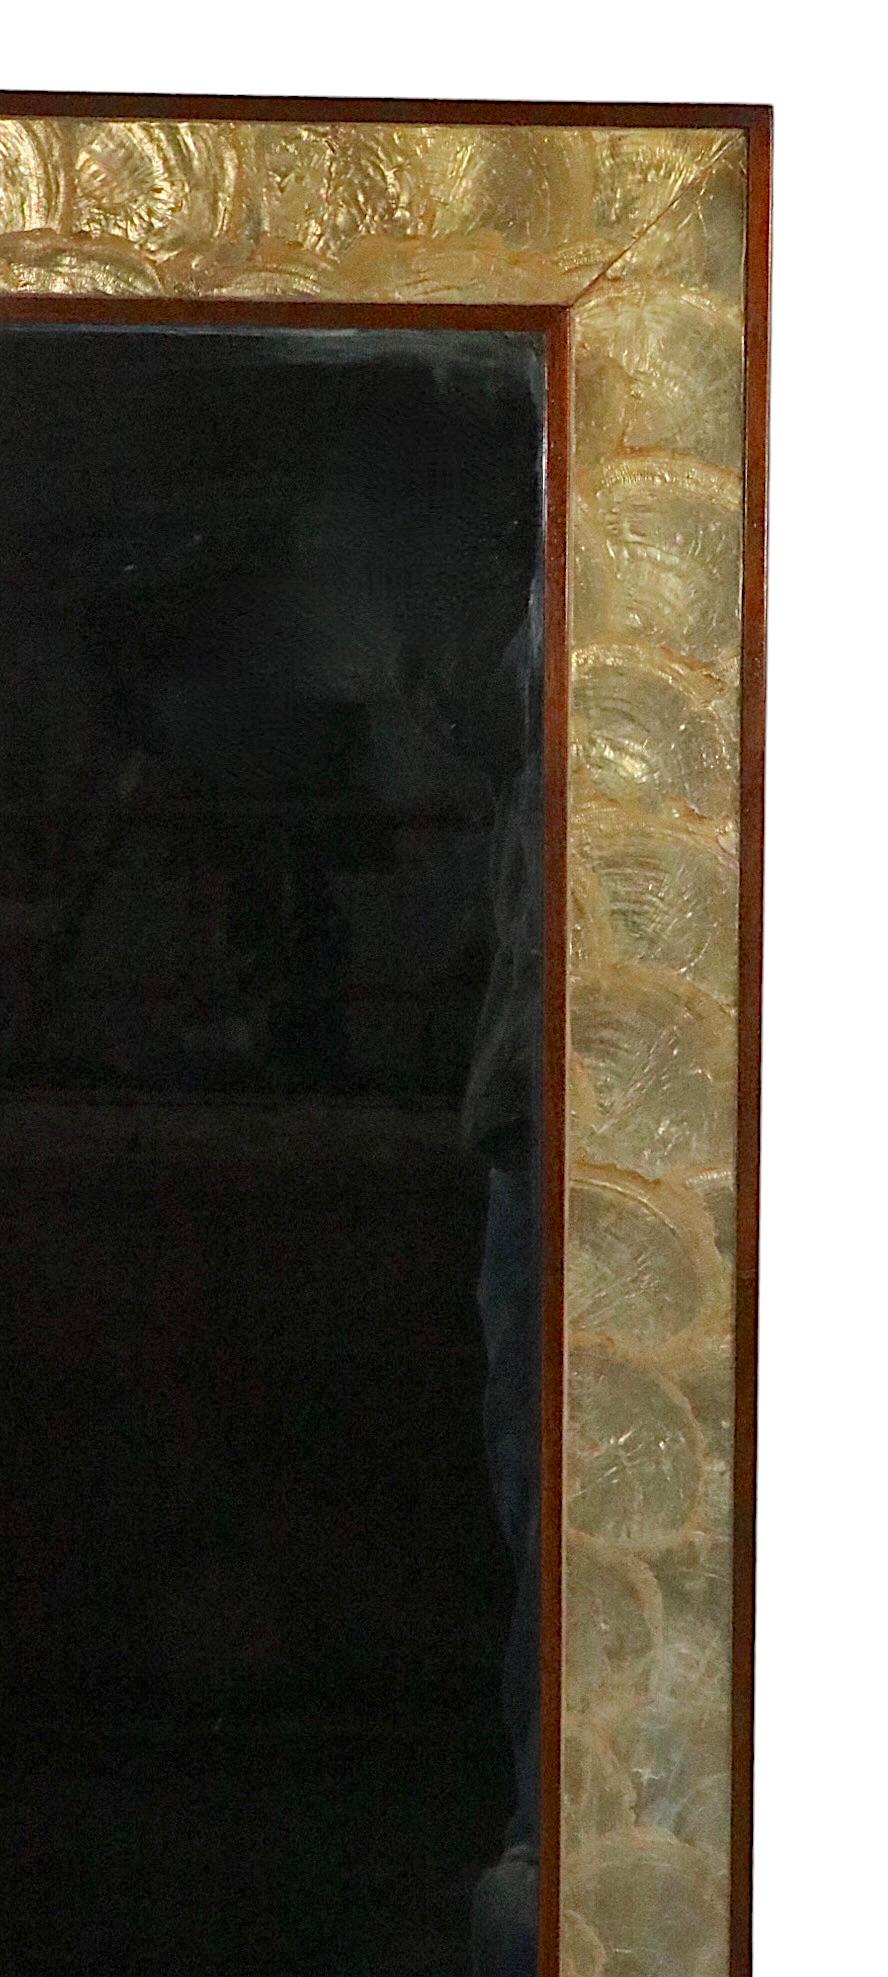 Schicker rechteckiger Wandspiegel mit einem eleganten Rahmen aus Walnussholz, der das Innere mit goldfarbenen Kapiz-Muscheln umgibt.
Zurzeit ist der Spiegel so konfiguriert, dass er vertikal hängt, aber er kann auch leicht horizontal aufgehängt